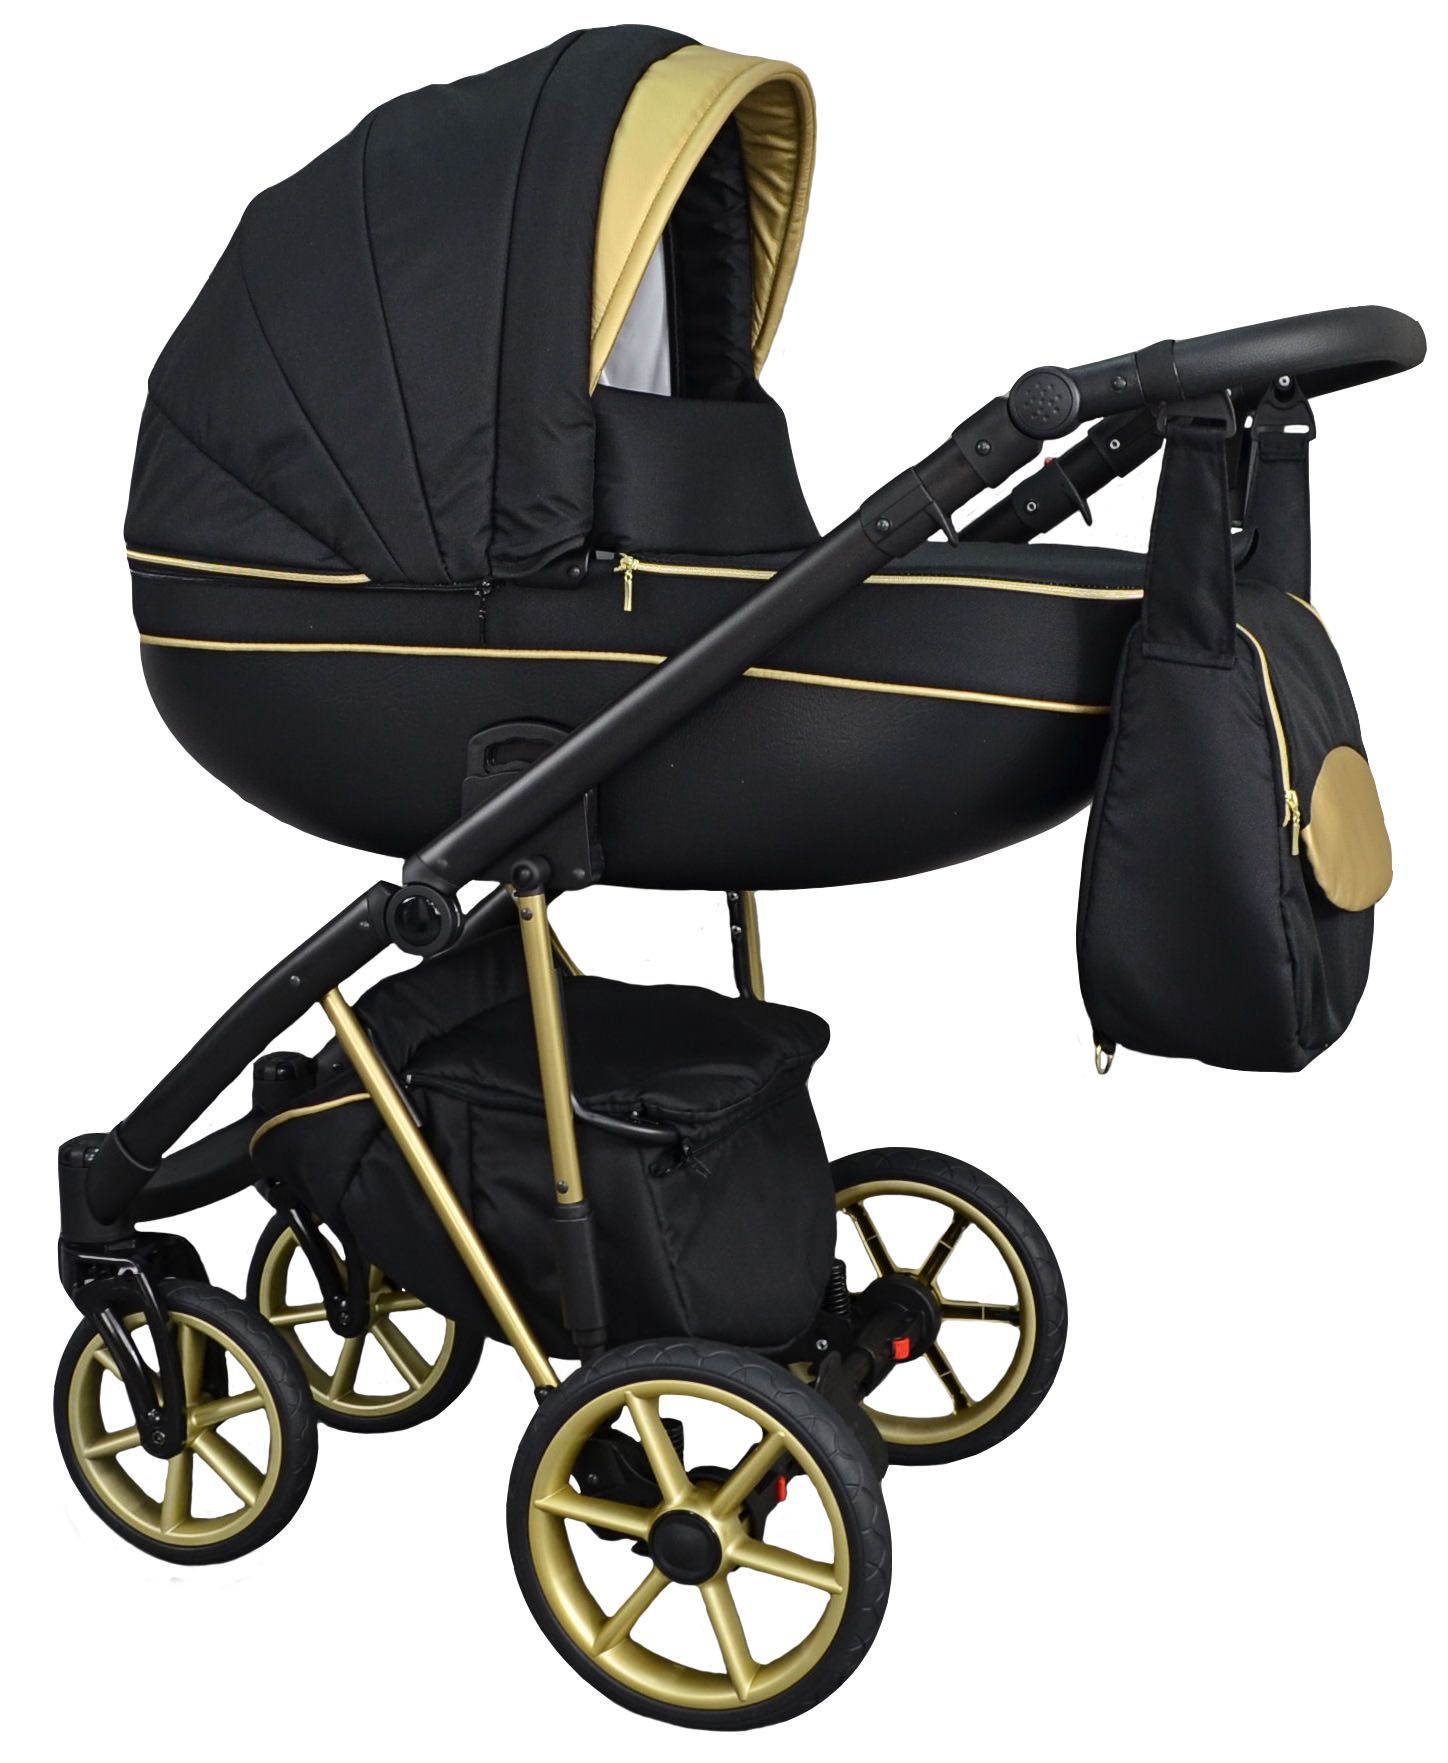 NOWY Złoty Wózek Dziecięcy Fabero Gold 3w1 Gondola Spacerówka Fotelik